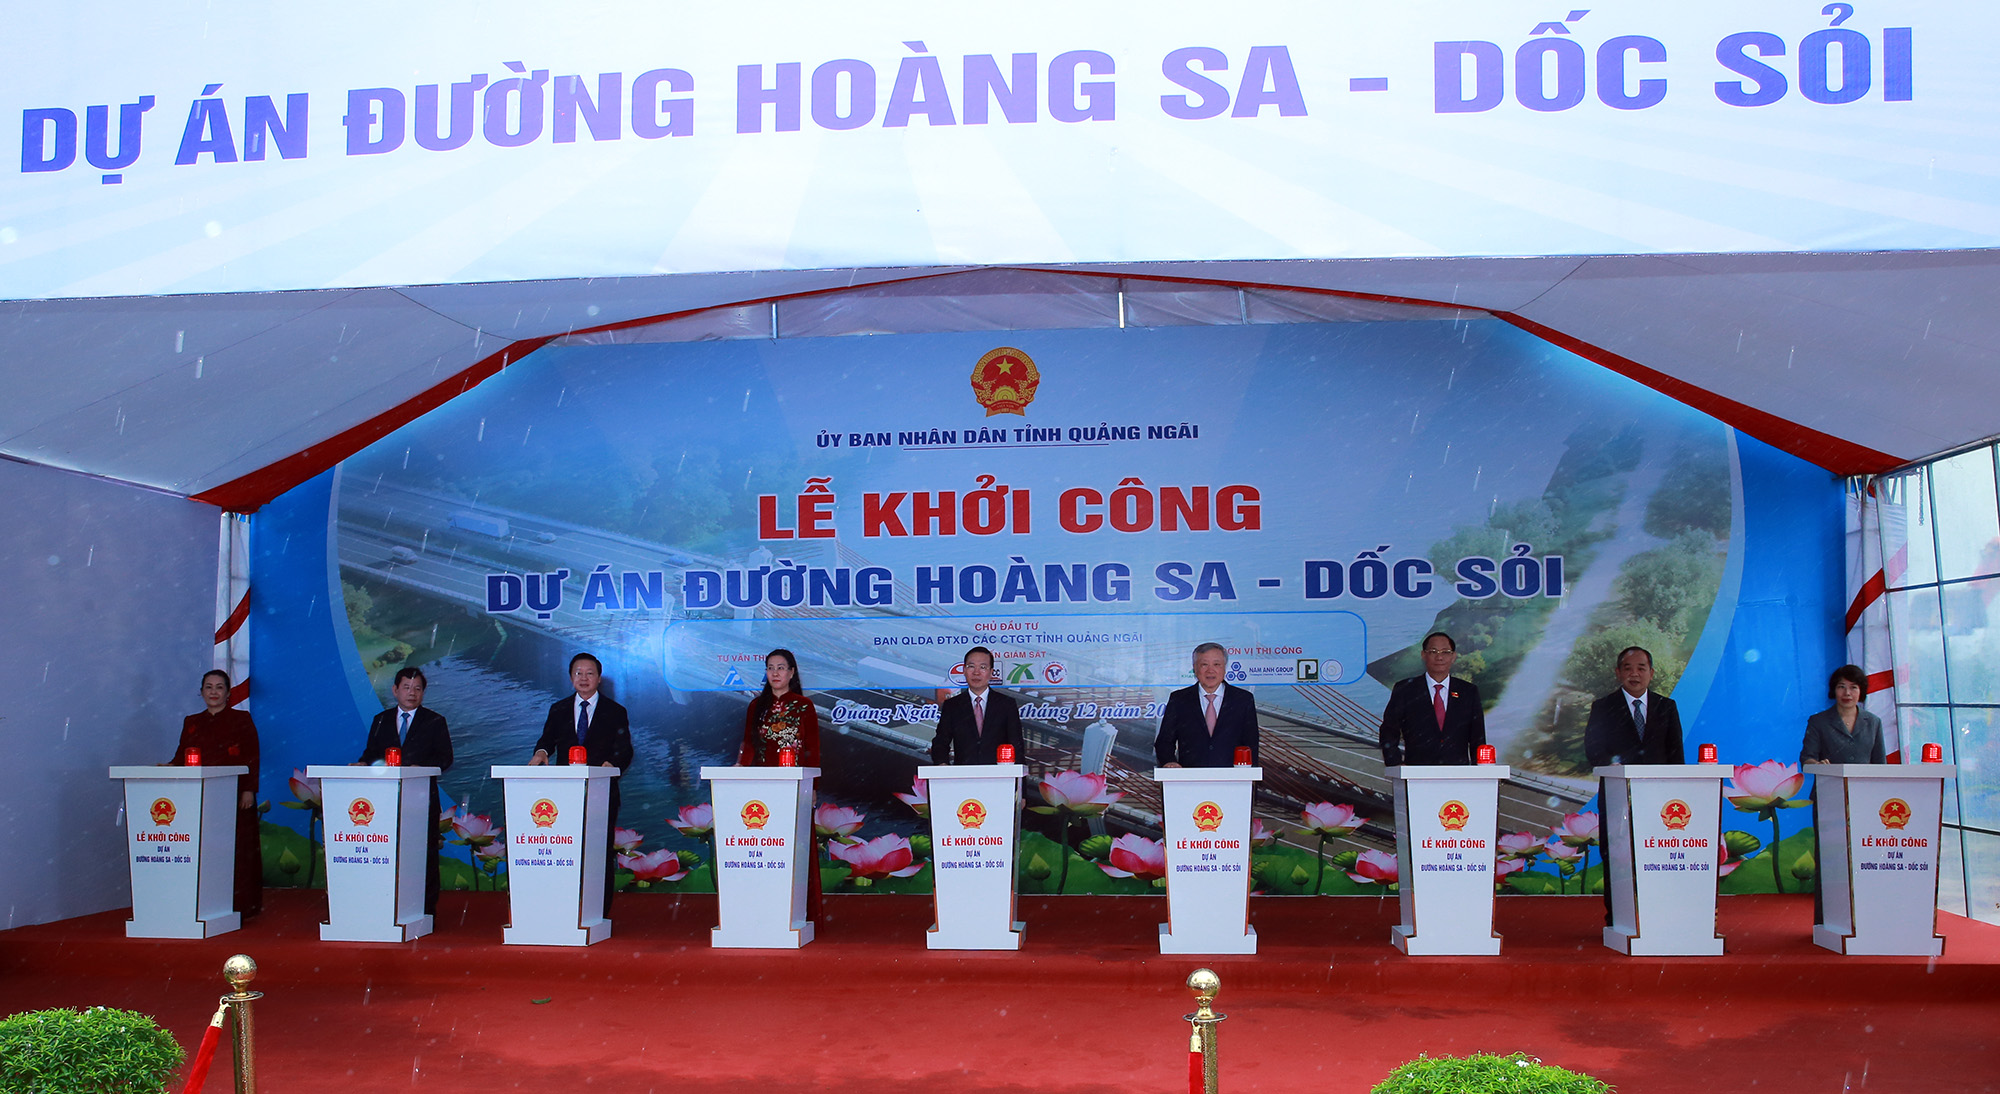 Chủ tịch nước Võ Văn Thưởng và các đồng chí lãnh đạo bấm nút khởi công dự án đường Hoàng Sa - Dốc Sỏi - Ảnh: VGP/Minh Khôi